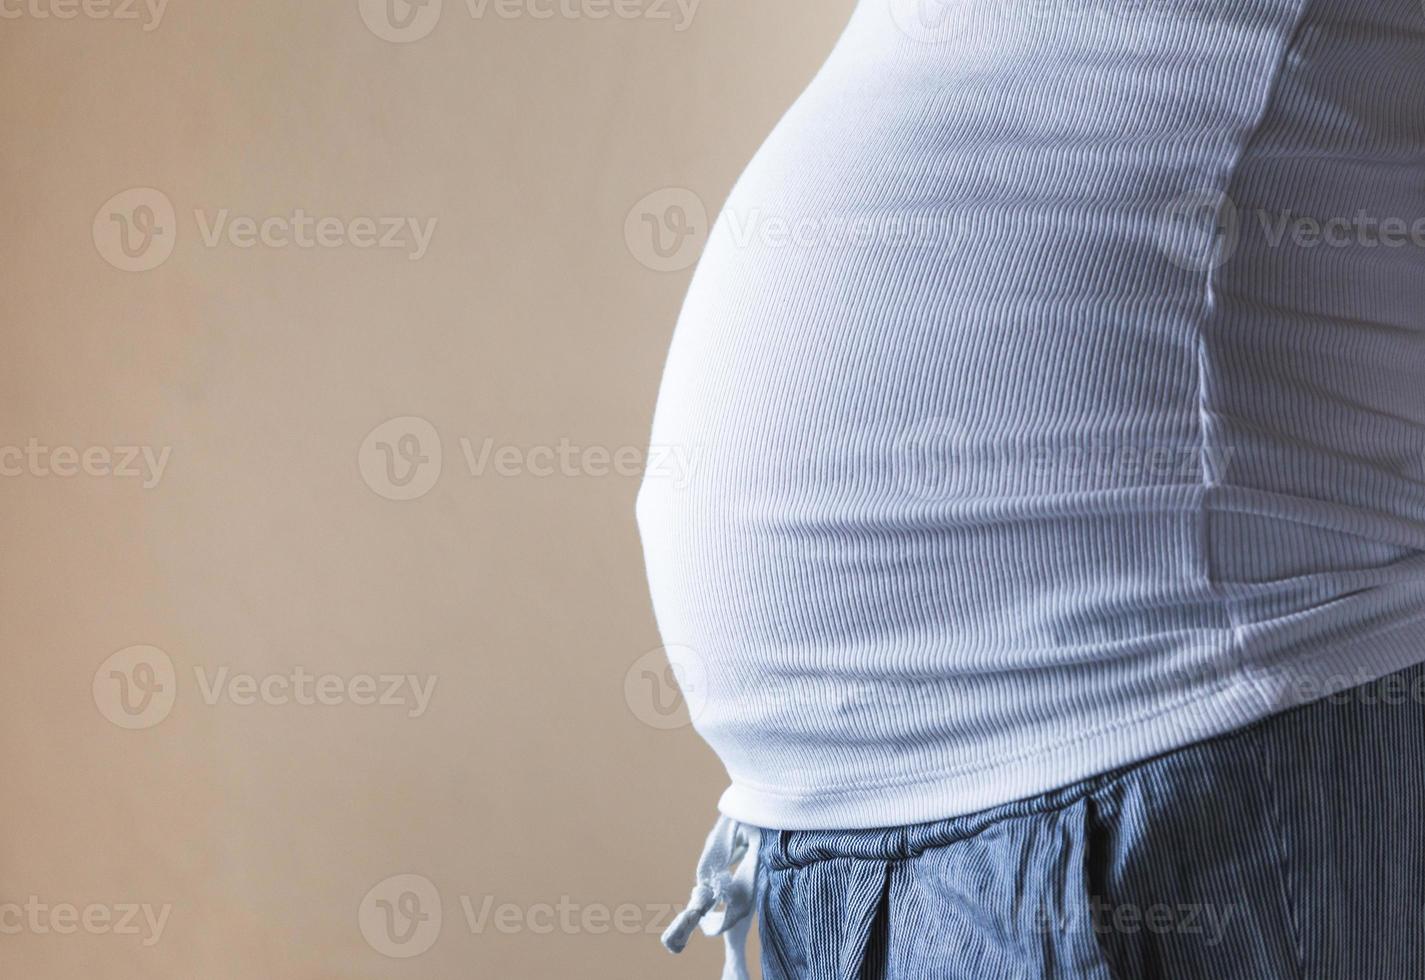 Une vue rapprochée du ventre d'une femme enceinte vue de côté sur un fond jaune photo